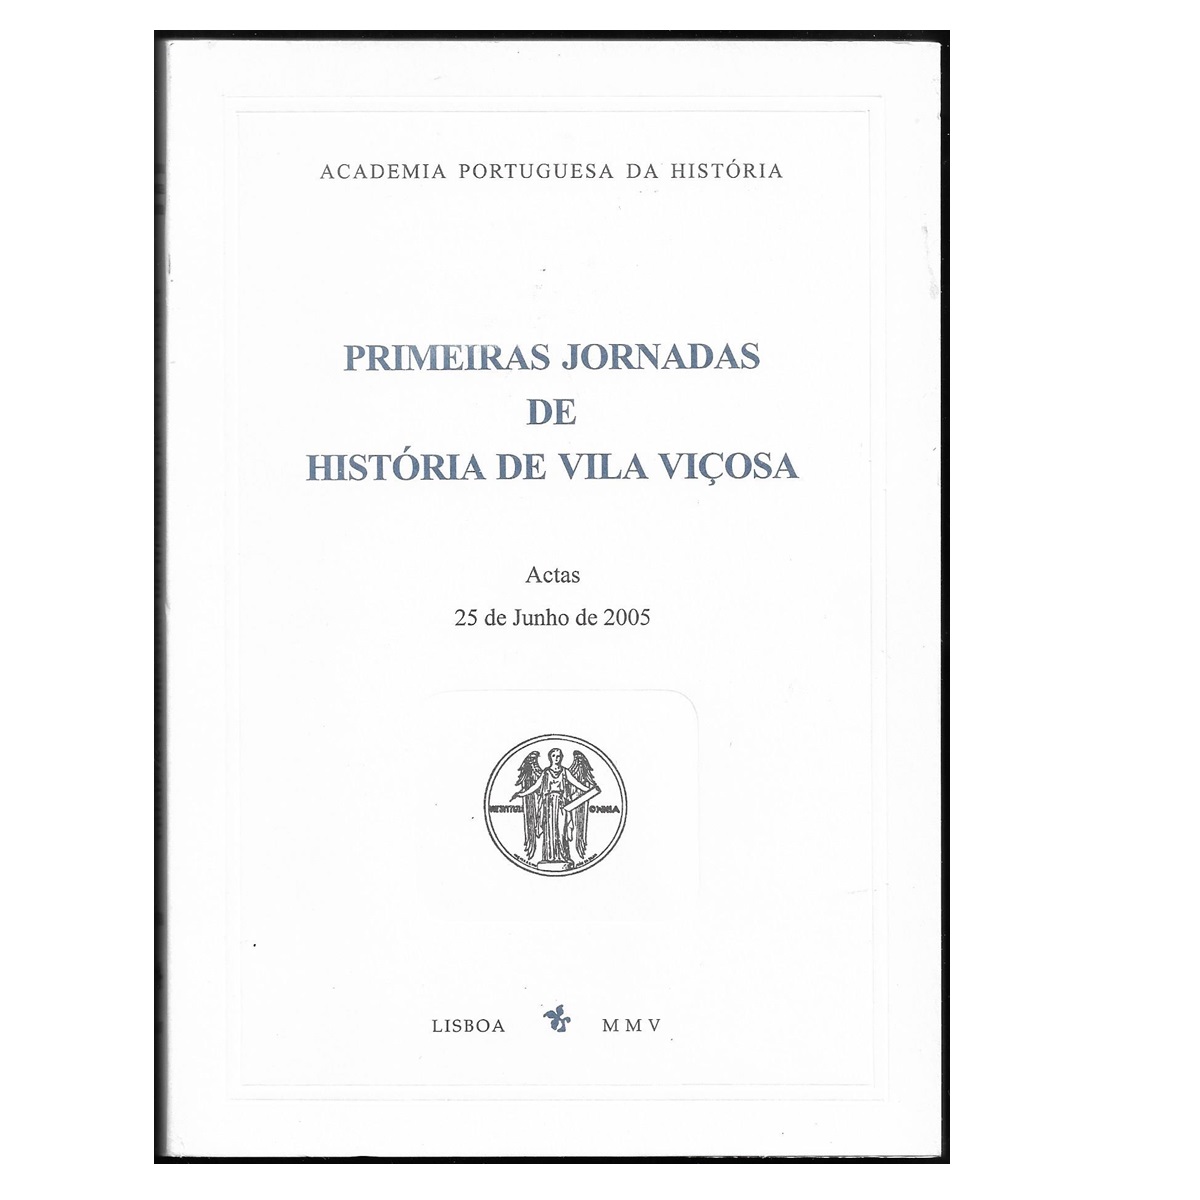 PRIMEIRAS JORNADAS DE HISTÓRIA DE VILA VIÇOSA.